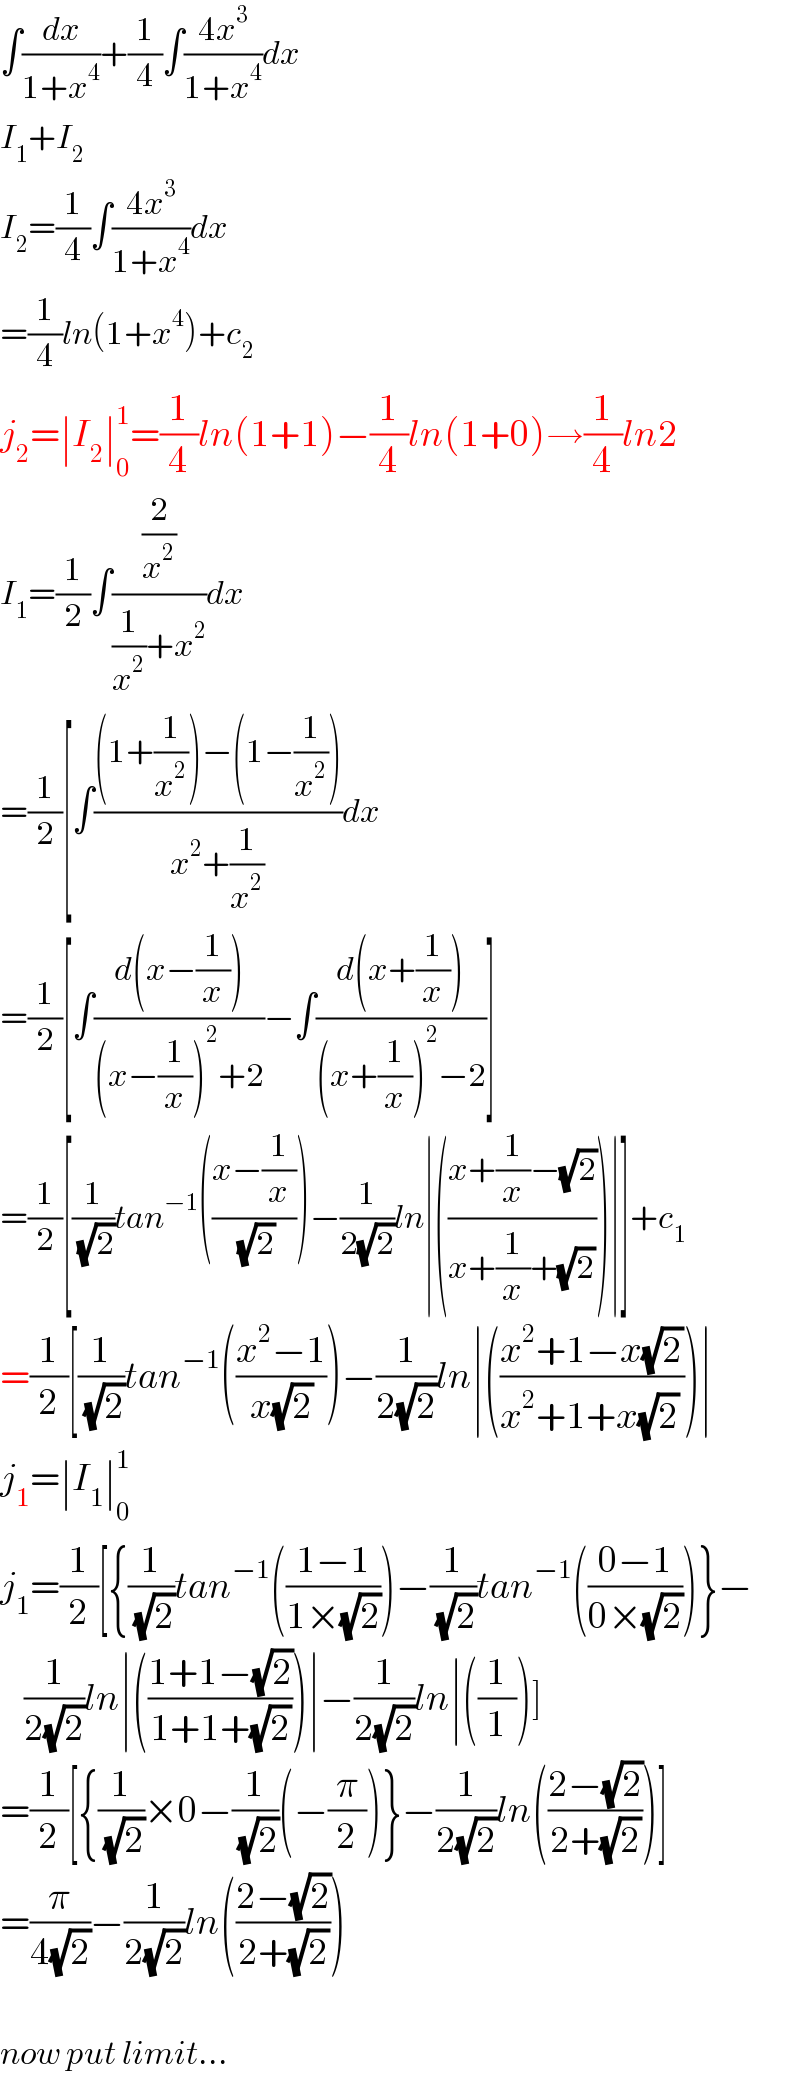 ∫(dx/(1+x^4 ))+(1/4)∫((4x^3 )/(1+x^4 ))dx  I_1 +I_2   I_2 =(1/4)∫((4x^3 )/(1+x^4 ))dx  =(1/4)ln(1+x^4 )+c_2   j_2 =∣I_2 ∣_0 ^1 =(1/4)ln(1+1)−(1/4)ln(1+0)→(1/4)ln2  I_1 =(1/2)∫((2/x^2 )/((1/x^2 )+x^2 ))dx  =(1/2)[∫(((1+(1/x^2 ))−(1−(1/x^2 )))/(x^2 +(1/x^2 )))dx  =(1/2)[∫((d(x−(1/x)))/((x−(1/x))^2 +2))−∫((d(x+(1/x)))/((x+(1/x))^2 −2))]  =(1/2)[(1/(√2))tan^(−1) (((x−(1/x))/(√2)))−(1/(2(√2)))ln∣(((x+(1/x)−(√2))/(x+(1/x)+(√2))))∣]+c_1   =(1/2)[(1/(√2))tan^(−1) (((x^2 −1)/(x(√2))))−(1/(2(√2)))ln∣(((x^2 +1−x(√2))/(x^2 +1+x(√2) )))∣  j_1 =∣I_1 ∣_0 ^1   j_1 =(1/2)[{(1/(√2))tan^(−1) (((1−1)/(1×(√2))))−(1/(√2))tan^(−1) (((0−1)/(0×(√2))))}−      (1/(2(√2)))ln∣(((1+1−(√2))/(1+1+(√2))))∣−(1/(2(√2)))ln∣((1/1))]  =(1/2)[{(1/(√2))×0−(1/(√2))(−(π/2))}−(1/(2(√2)))ln(((2−(√2))/(2+(√2))))]  =(π/(4(√2)))−(1/(2(√2)))ln(((2−(√2))/(2+(√2))))        now put limit...  